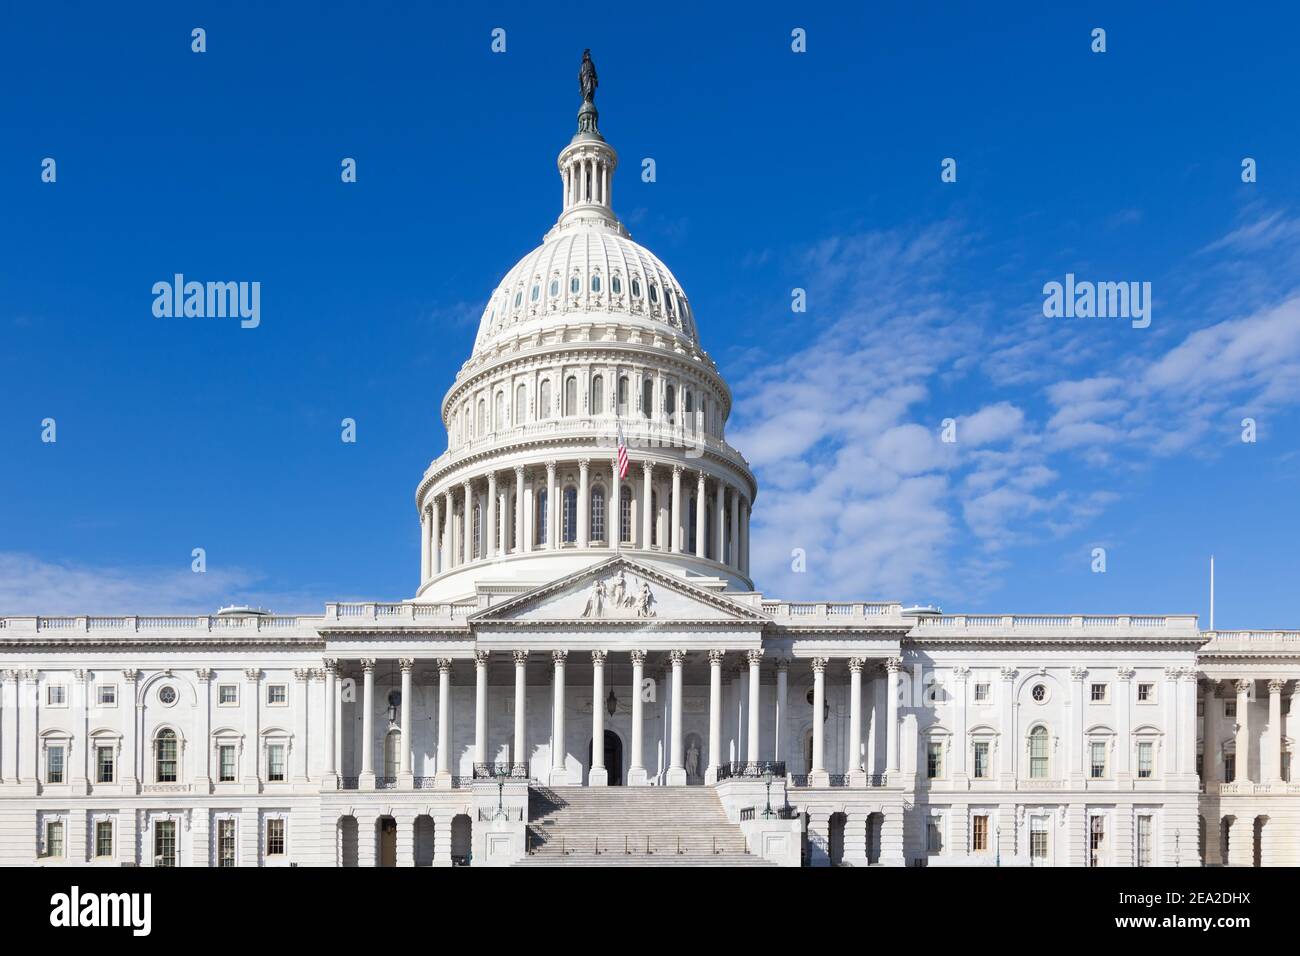 Das Kapitolgebäude in den USA. Die Gebäudefassade befindet sich in Washington DC in den USA. Сongress Sonniger Tag. Stockfoto